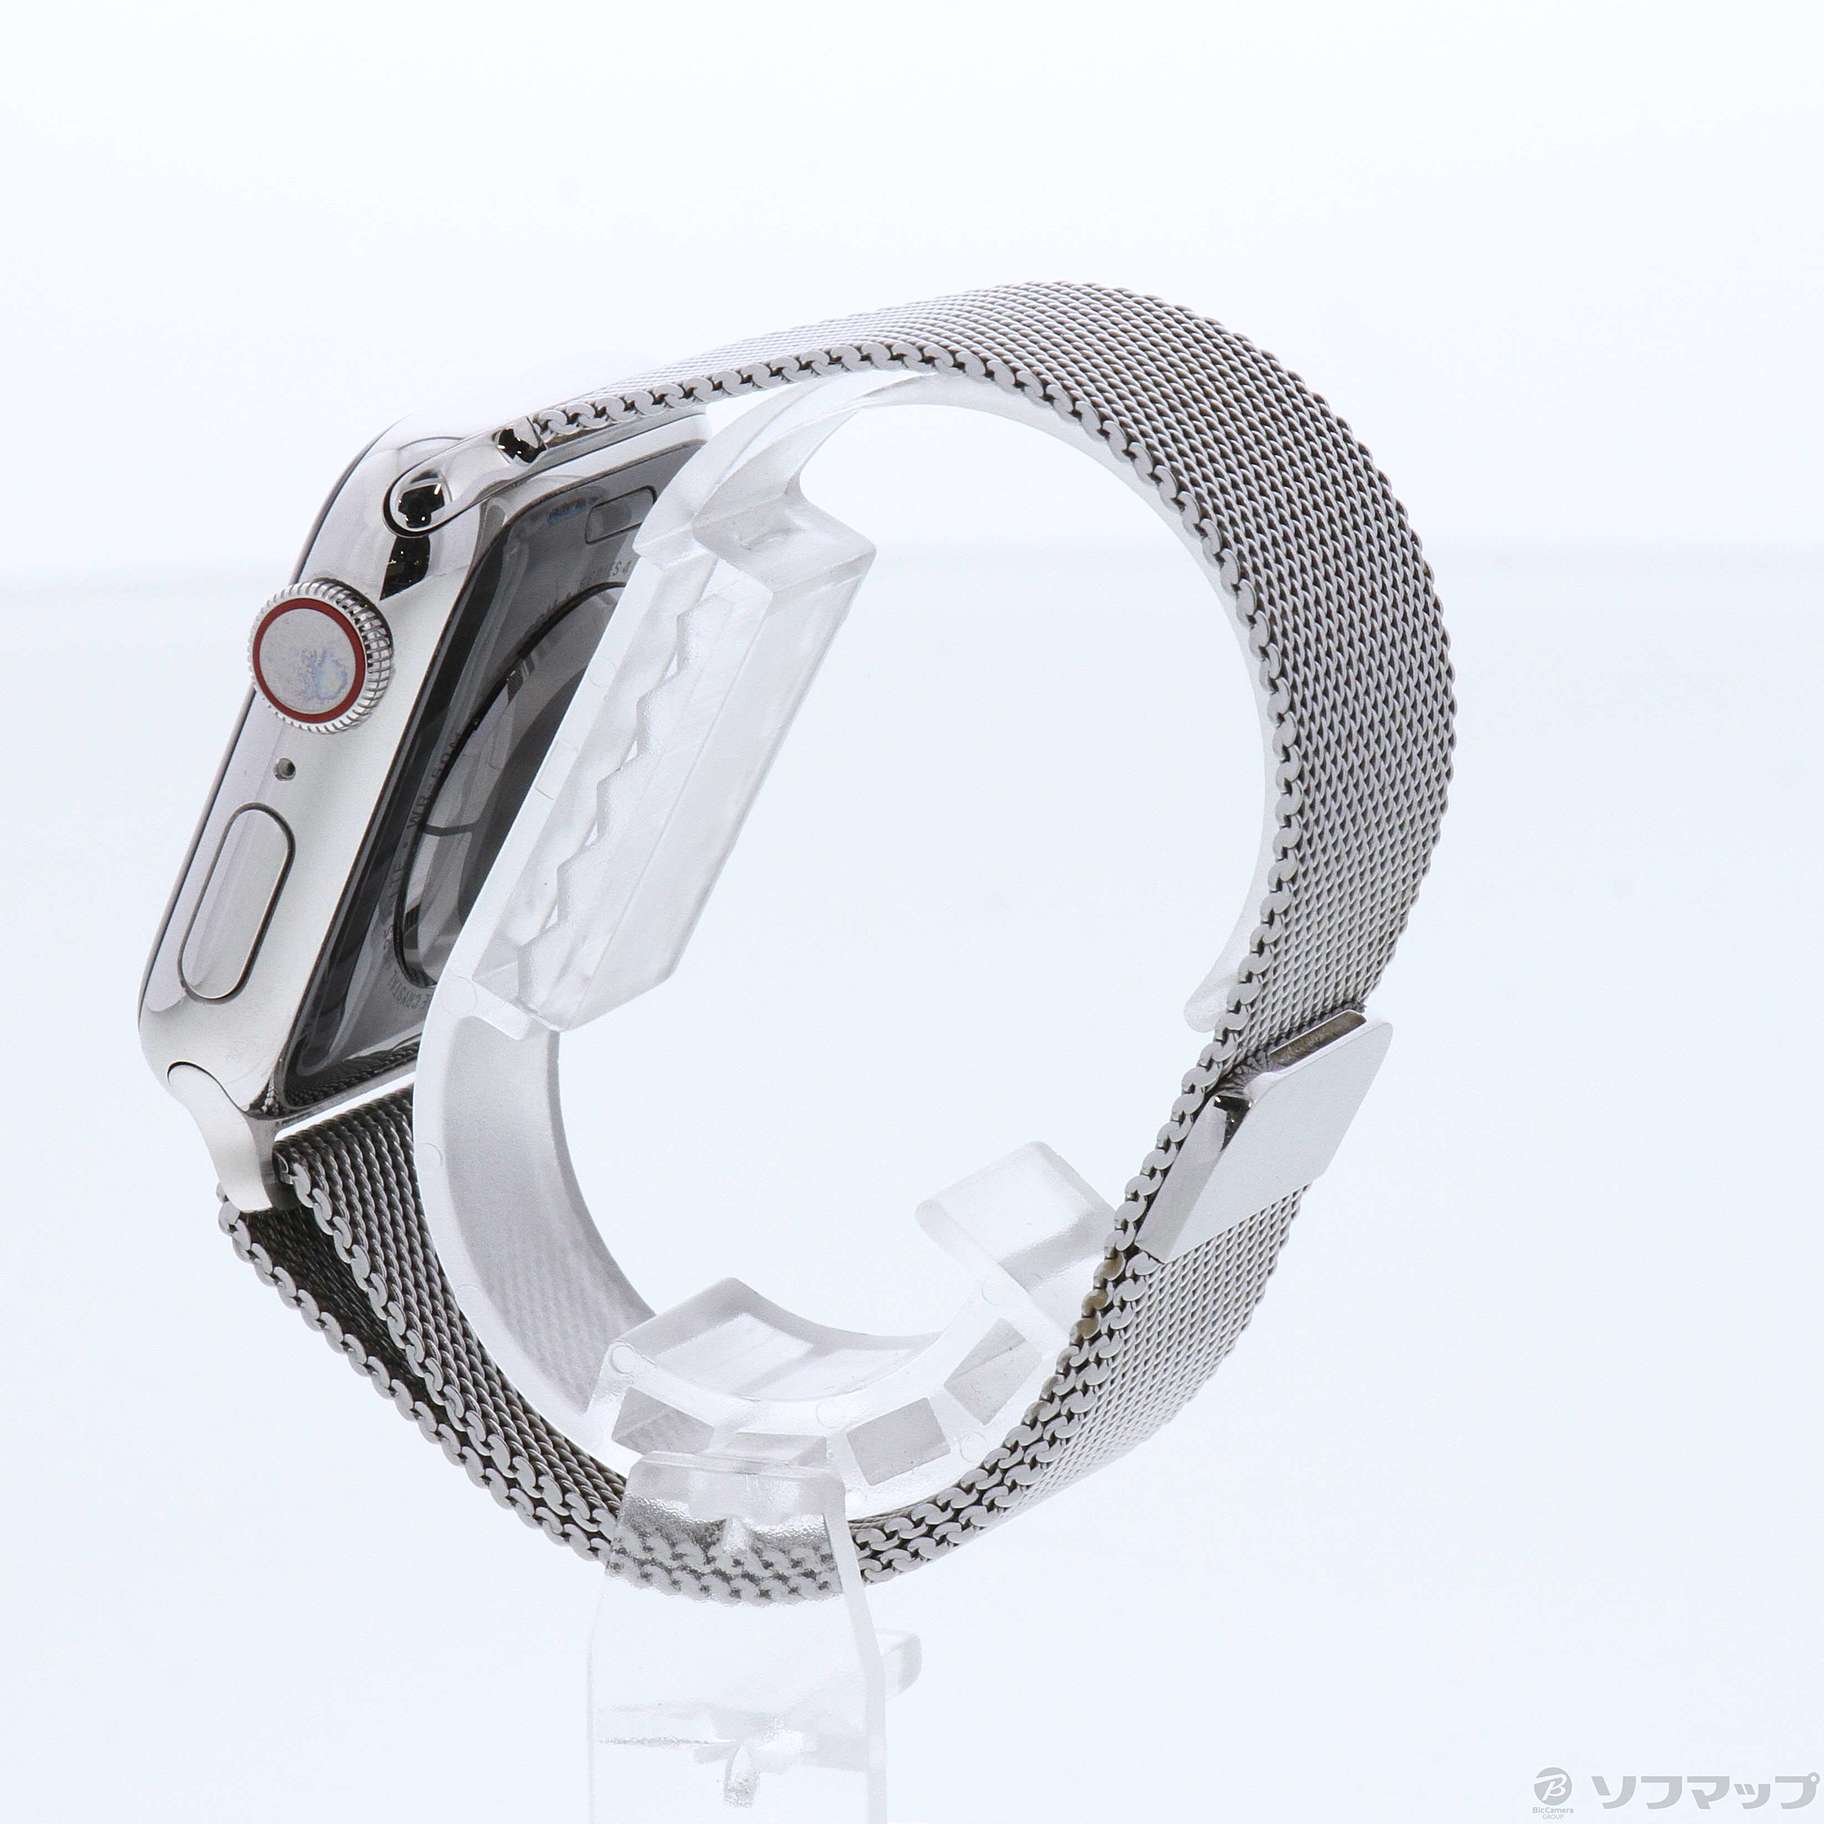 中古】Apple Watch Series 4 GPS + Cellular 40mm ステンレススチール ...